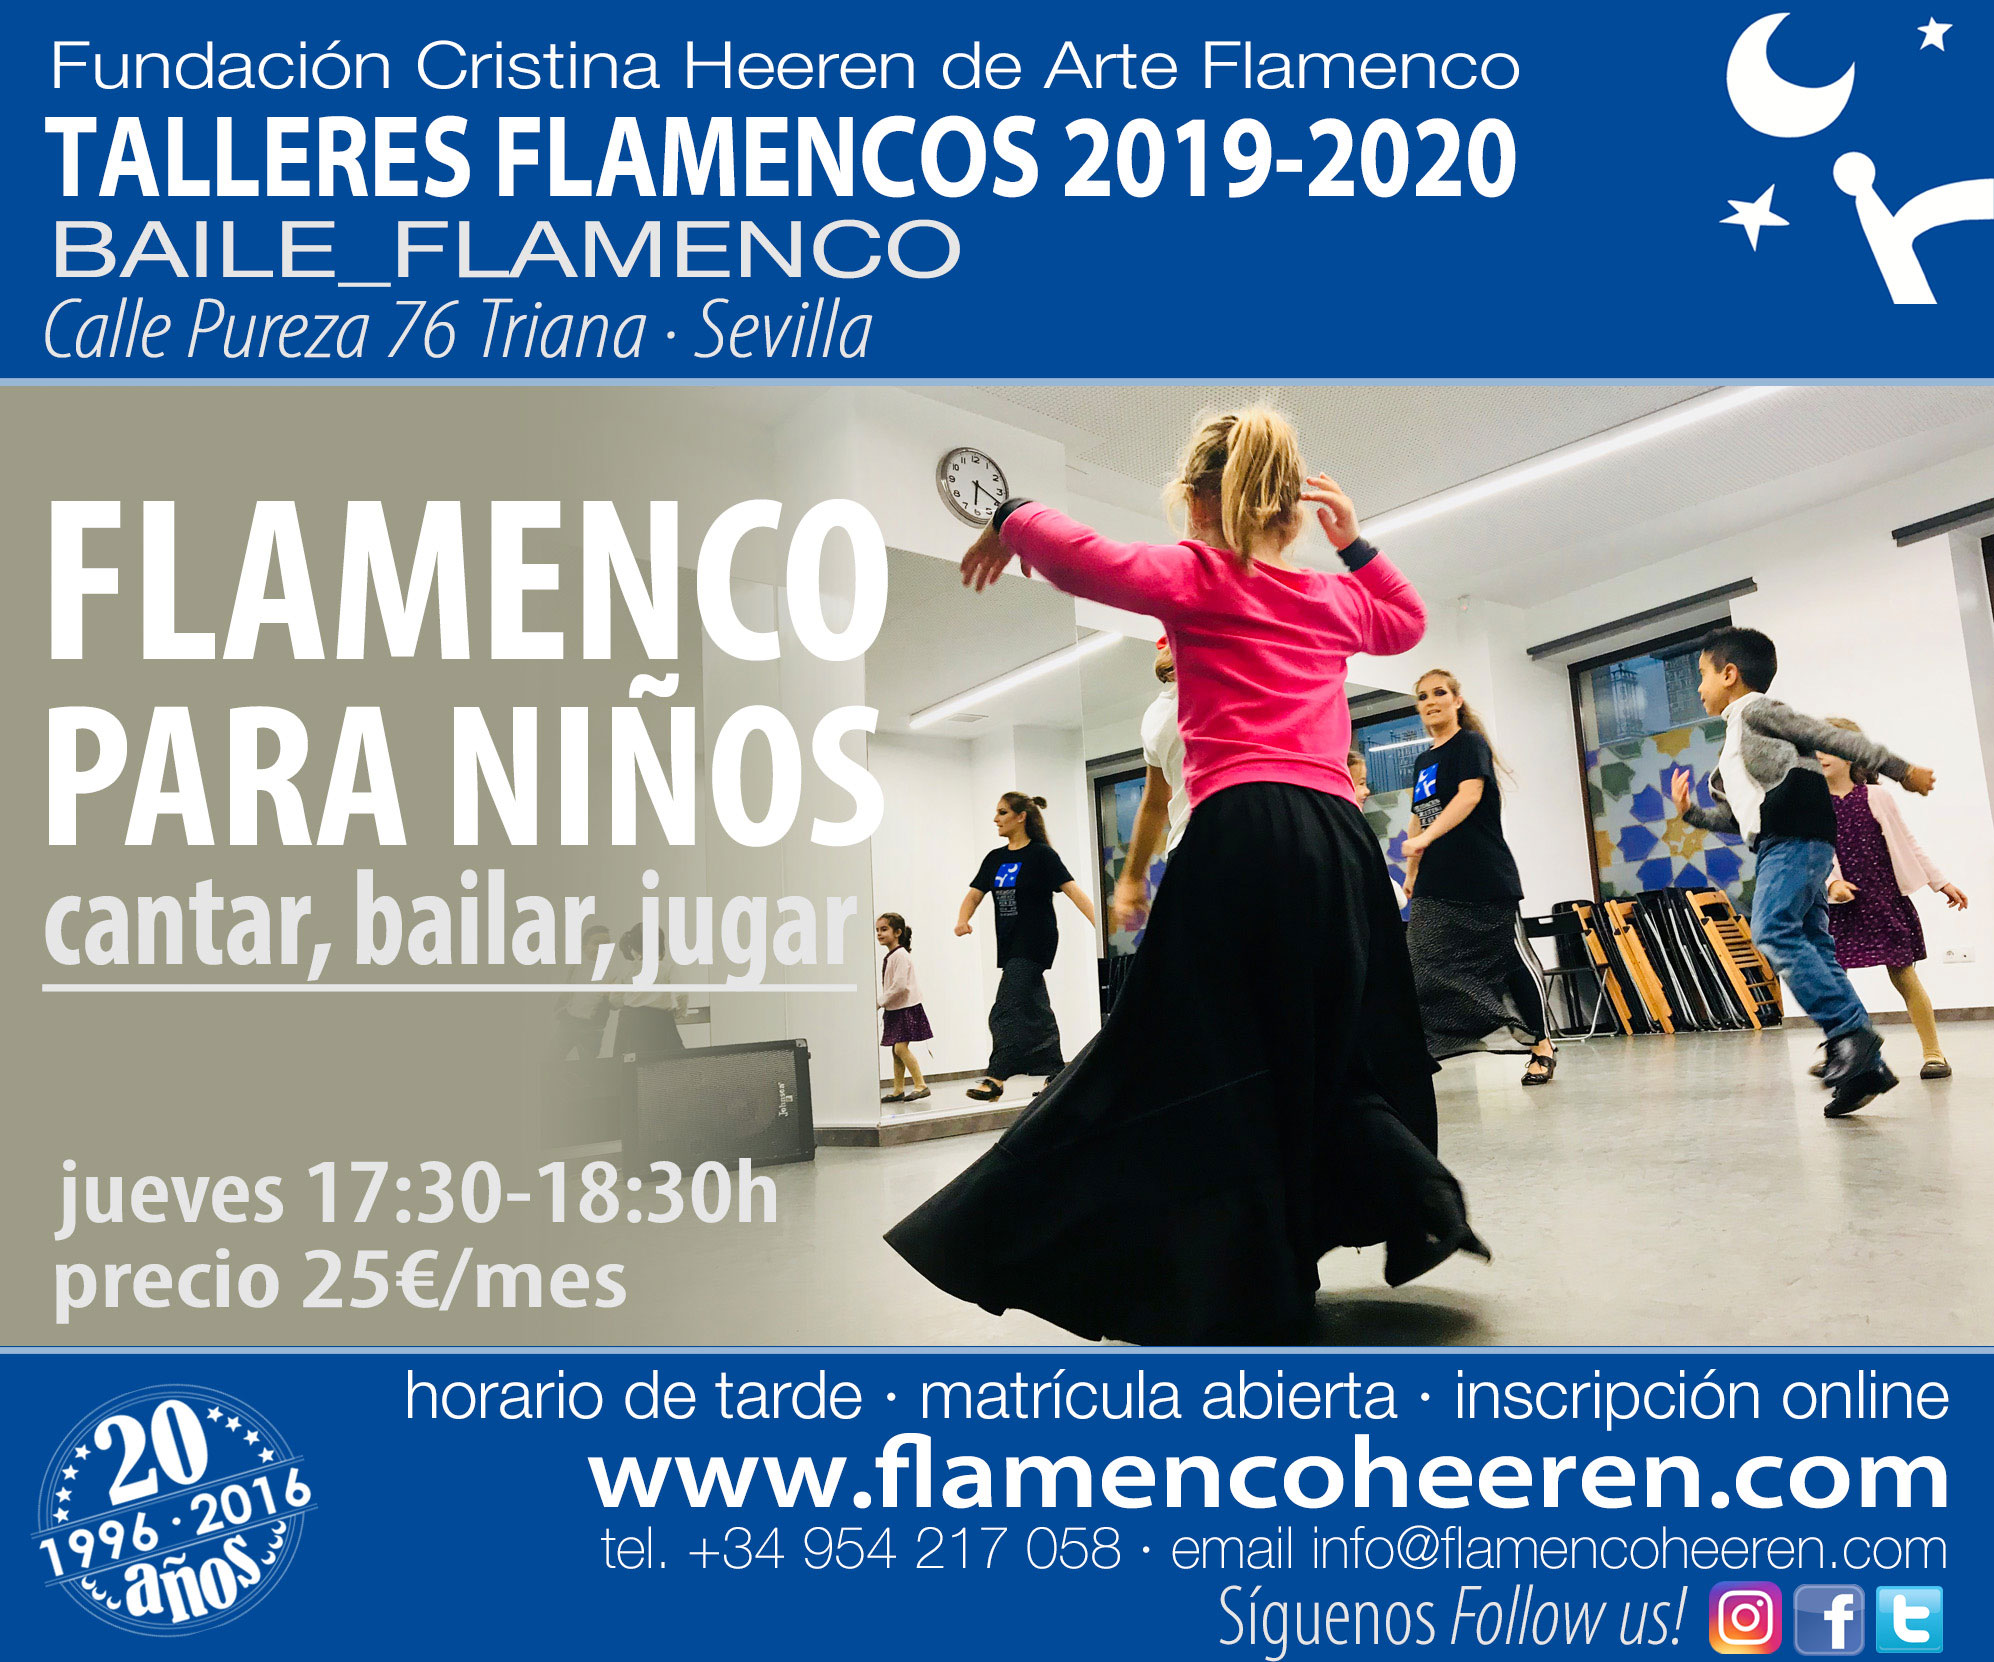 Flamenco para Niños. Talleres flamencos Fundación Cristina Heeren